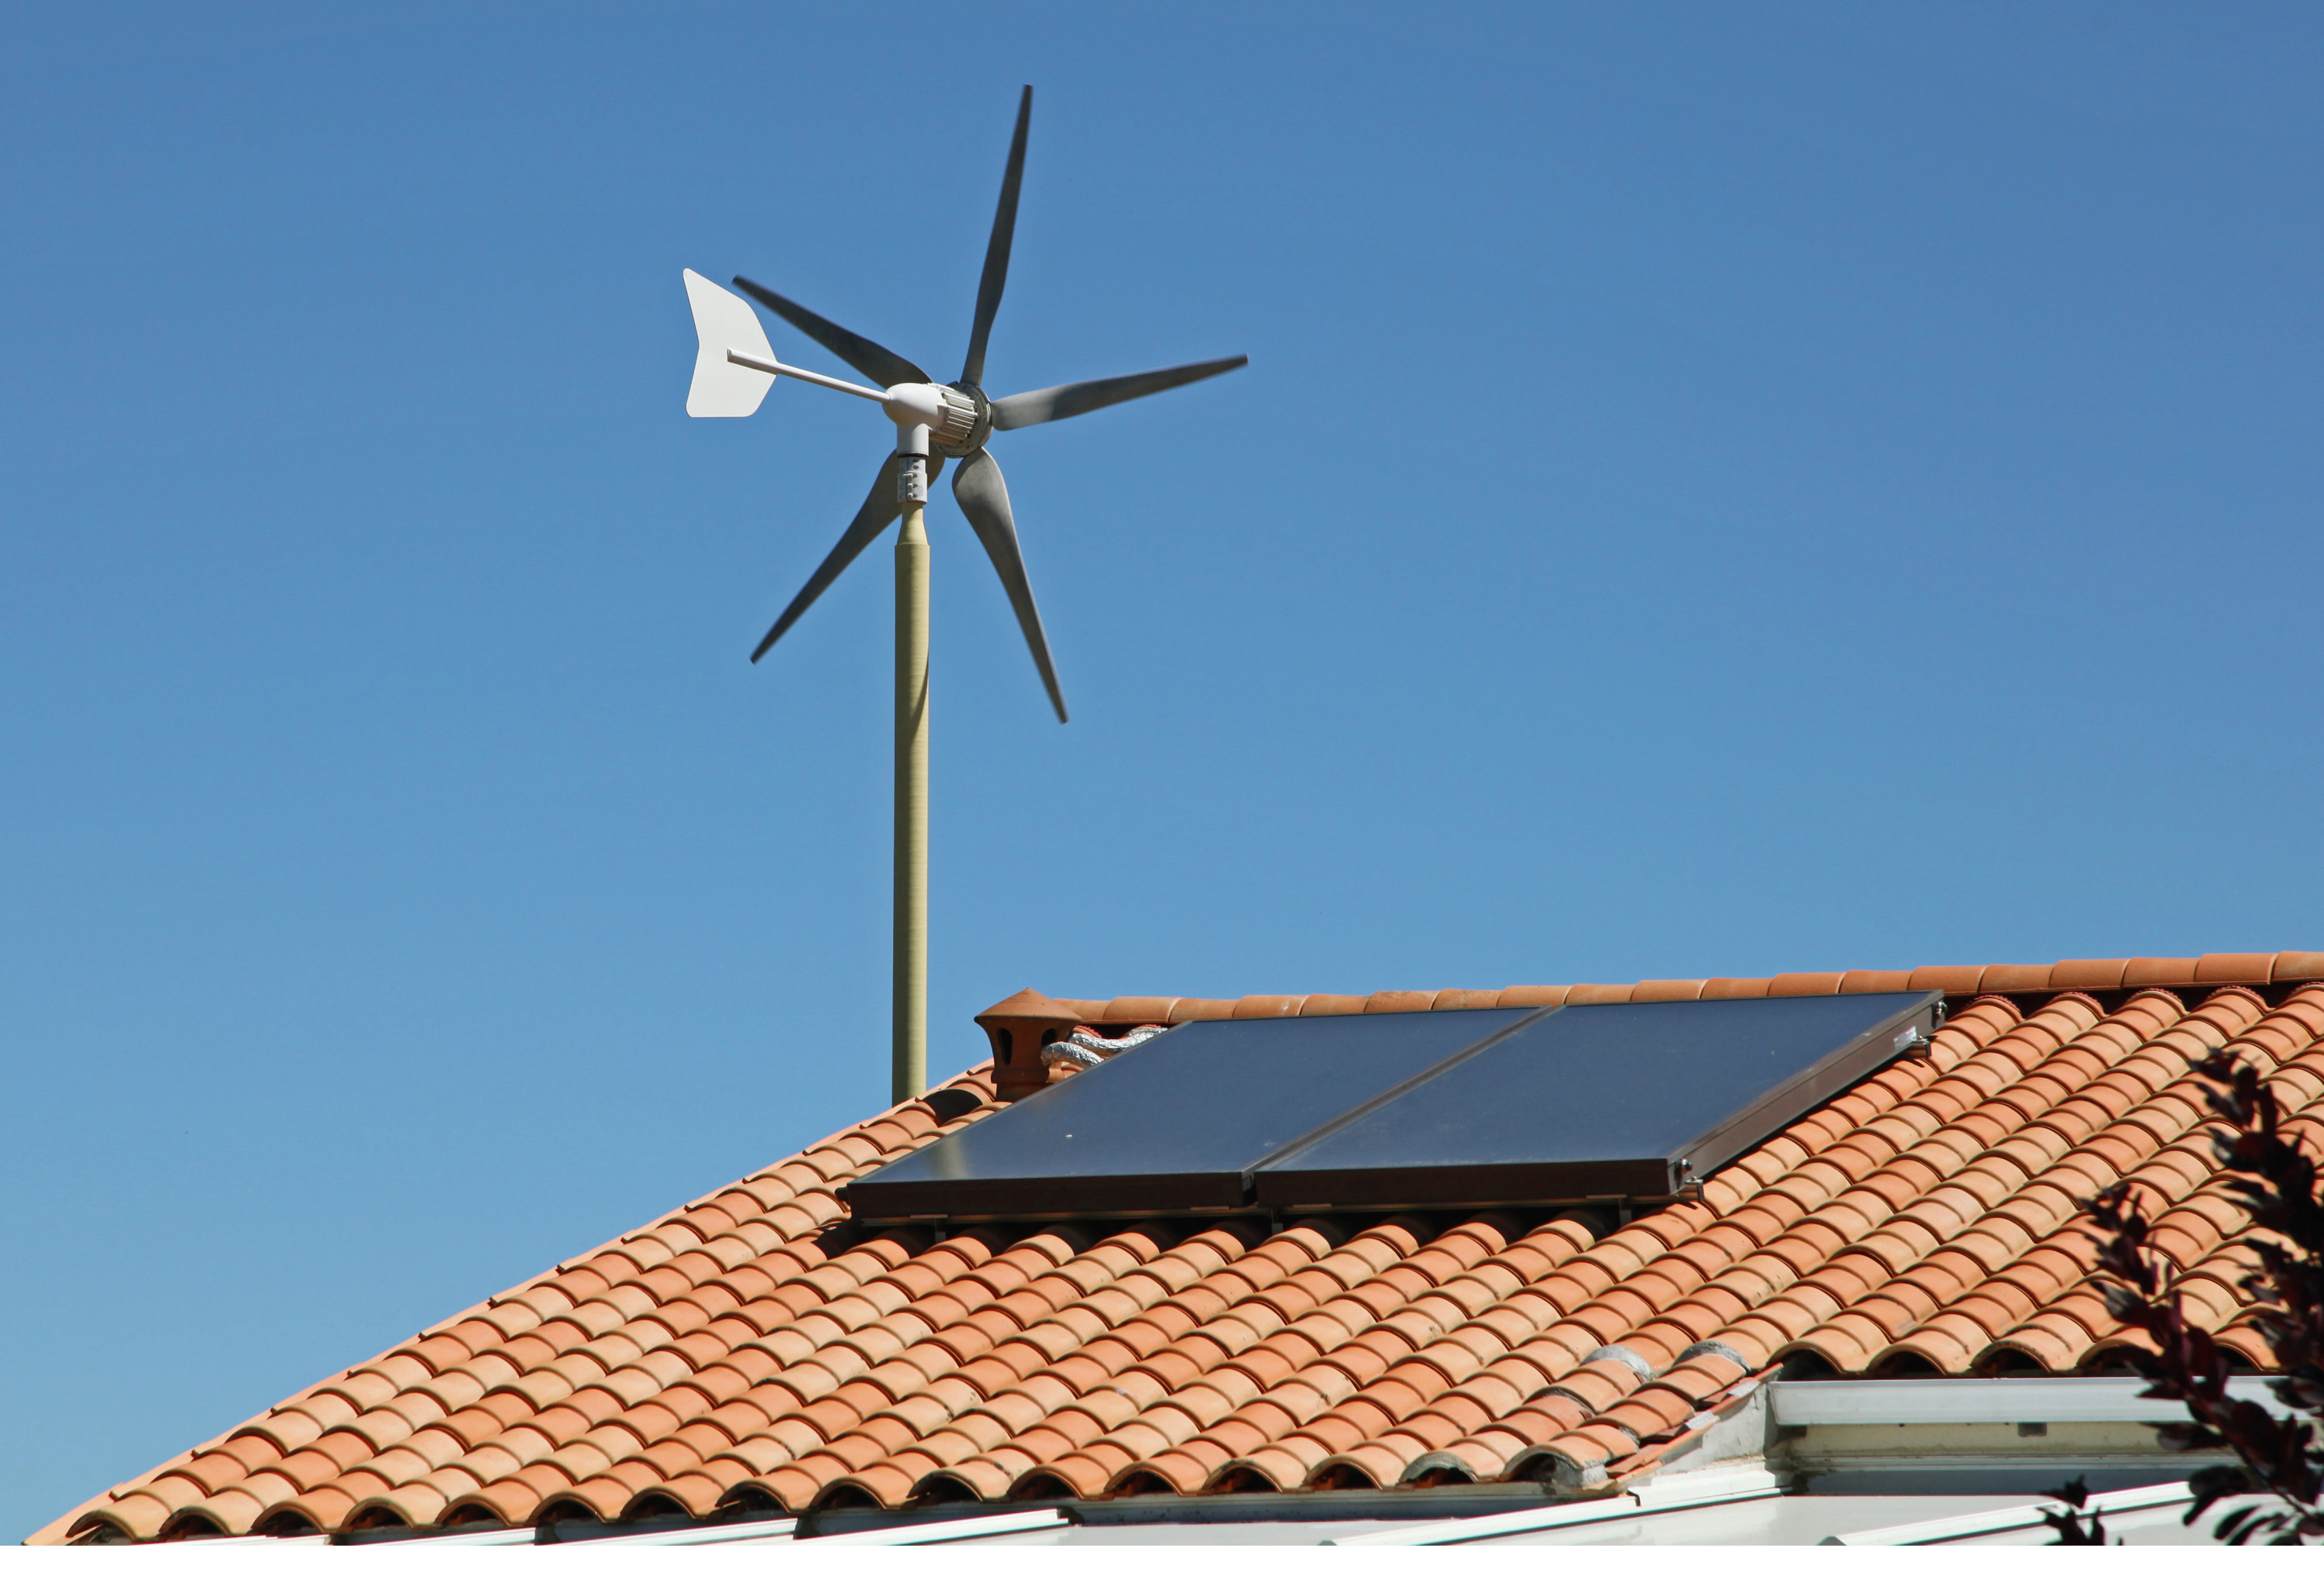 Une éolienne domestique de jardin - Produire son électricité et